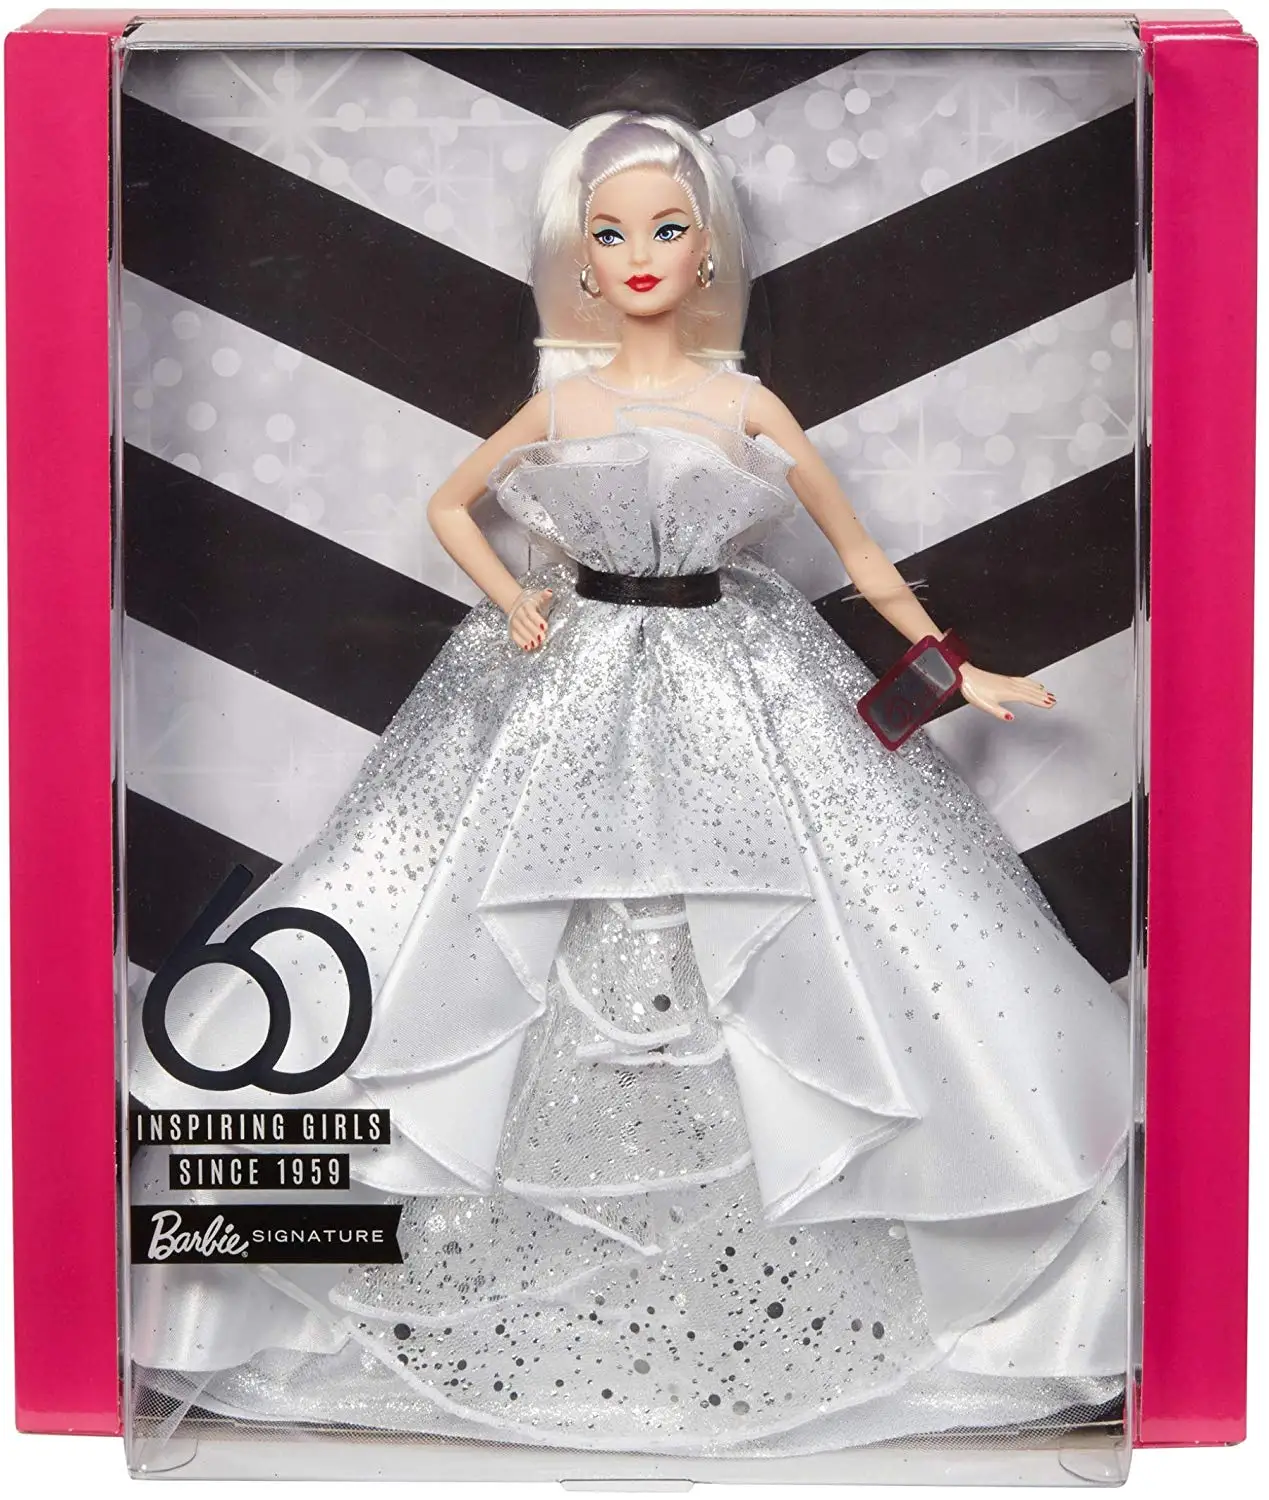 Барби Ограниченная Коллекция с Inspire кукла женщины миноритарная принцесса пилот для девочек Подарочная коробка подарок на день рождения